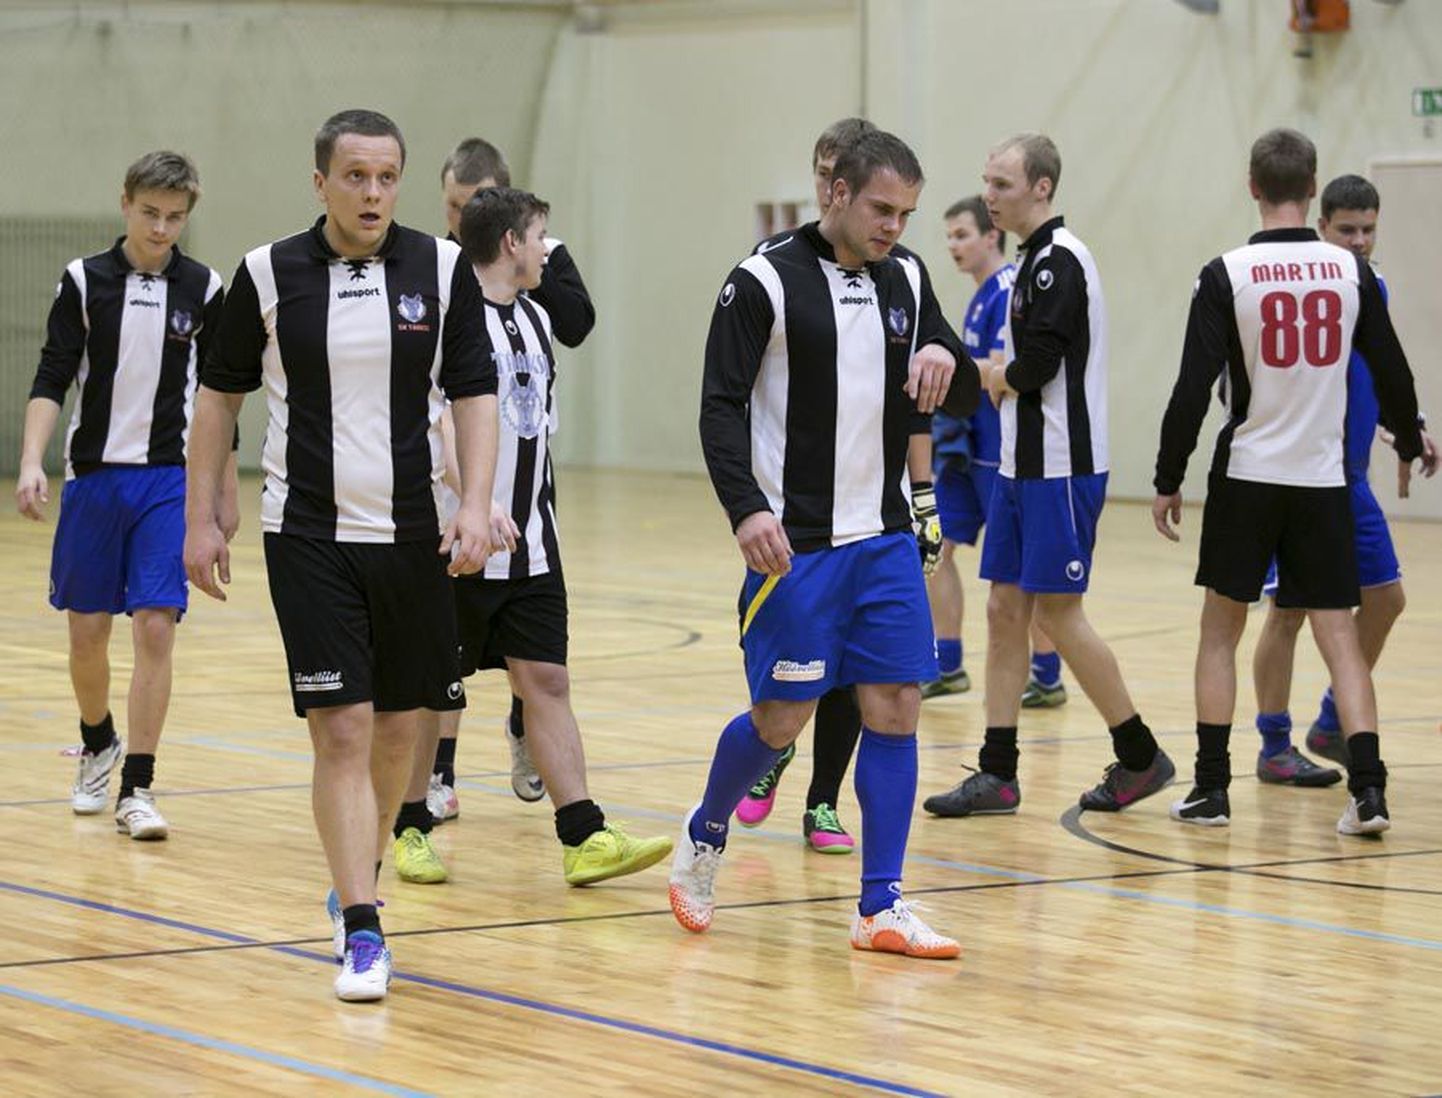 Tuleviku klubi korraldatud saalijalgpalliturniiril oli Viljandimaa võistkondadest edukaim Suure-Jaani valla Tääksi spordiklubi meeskond, kes jäi finaalis alla Tartu SK 10-le.